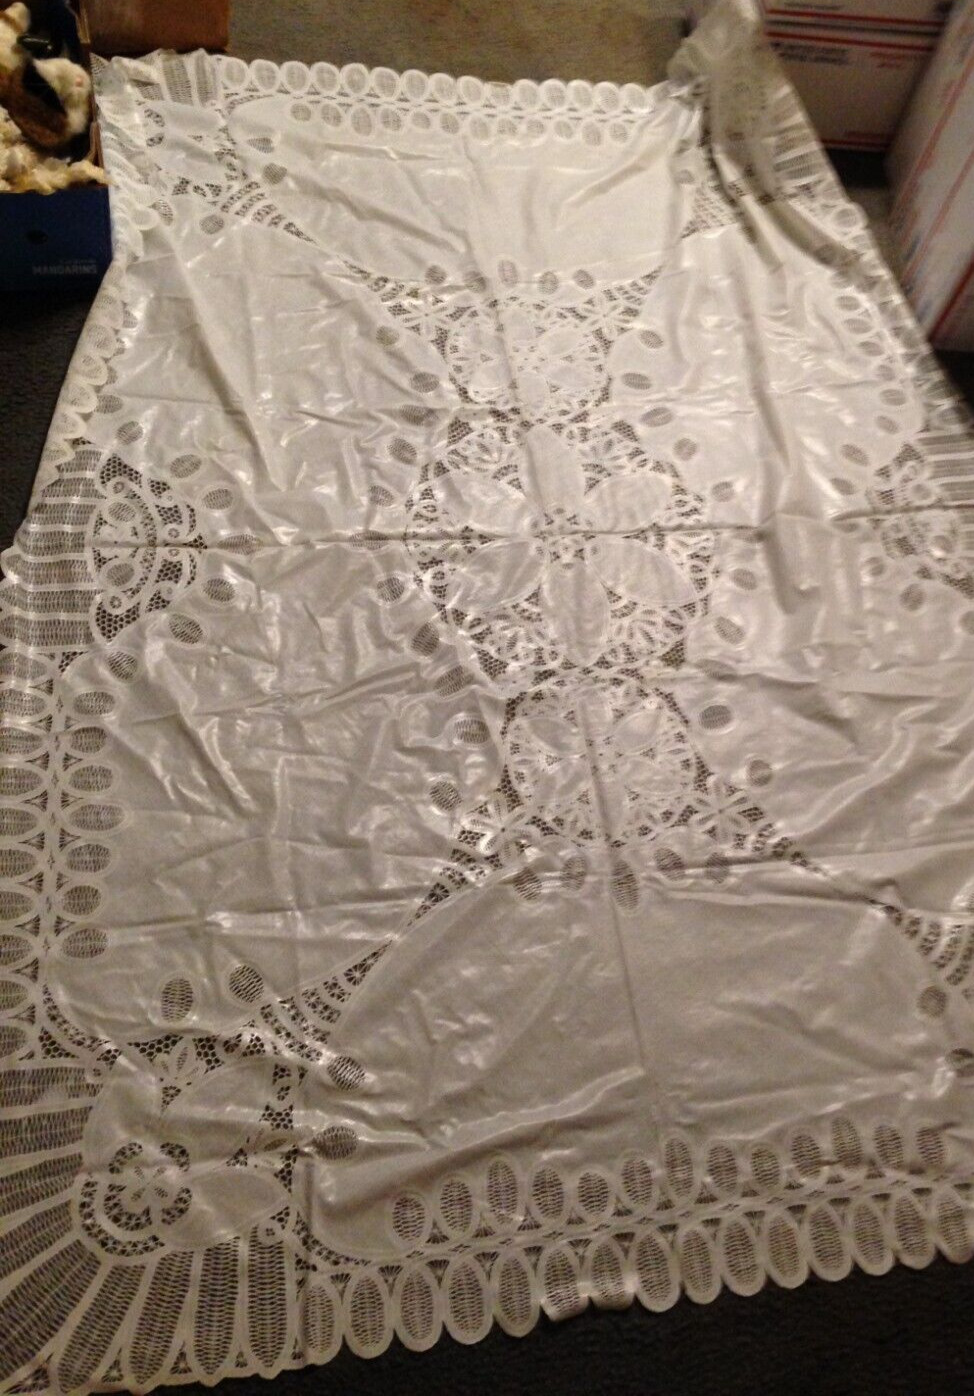 Vintage White Vinyl Lace Tablecloth 70” x 52”